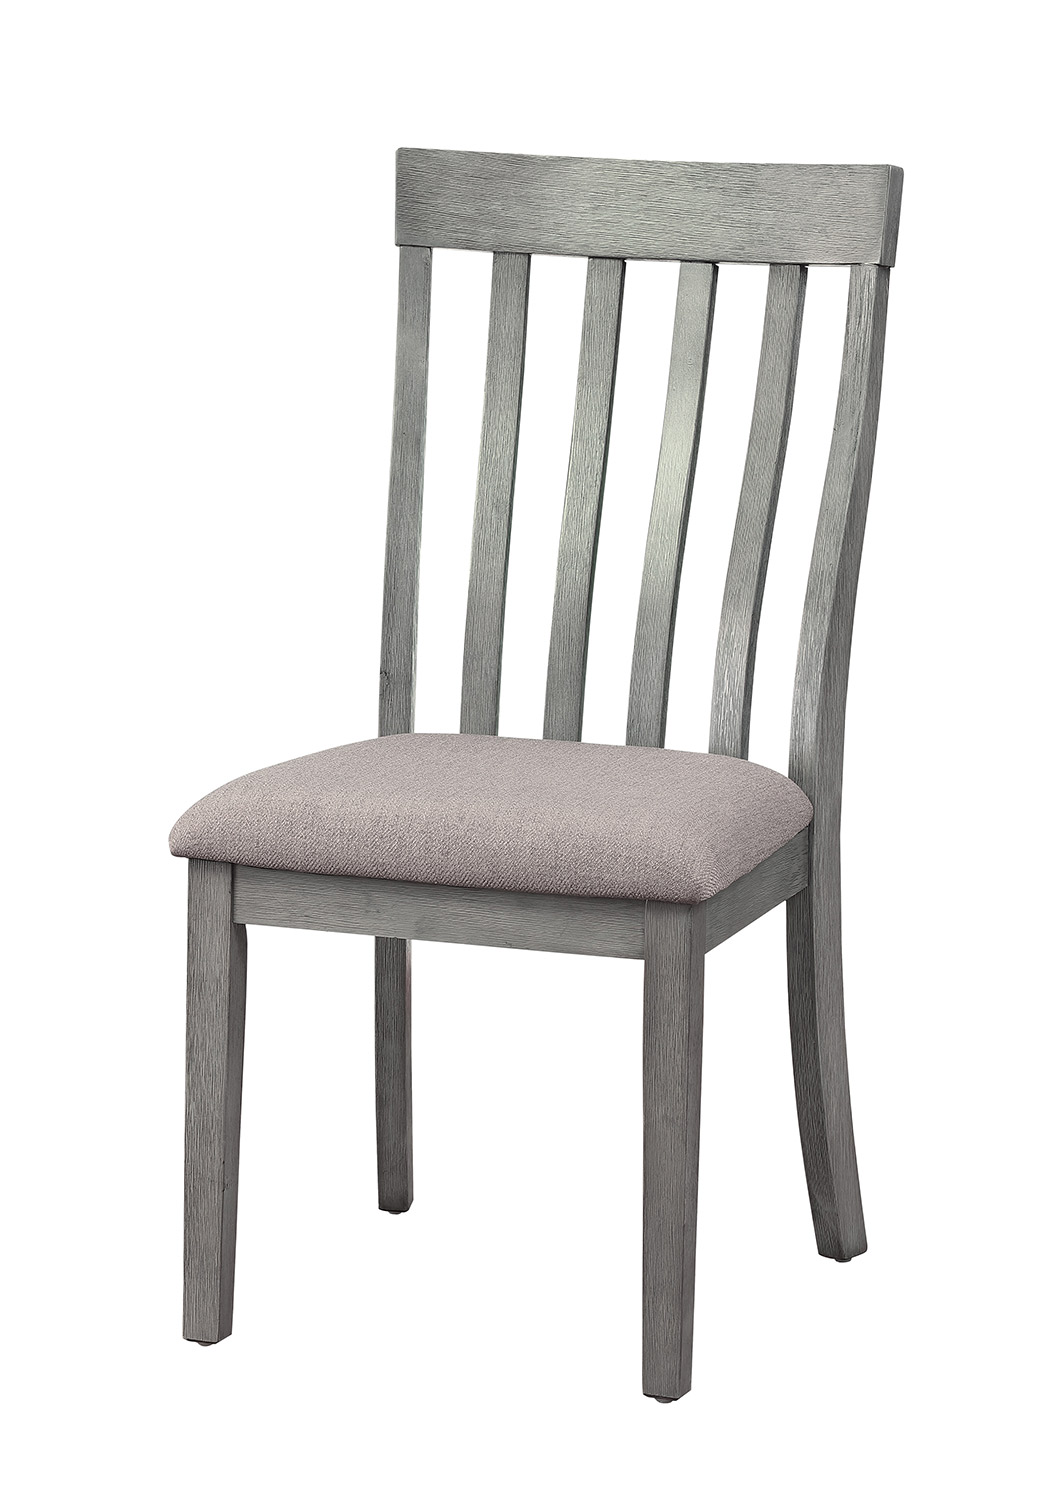 Homelegance Armhurst Side Chair - Gray